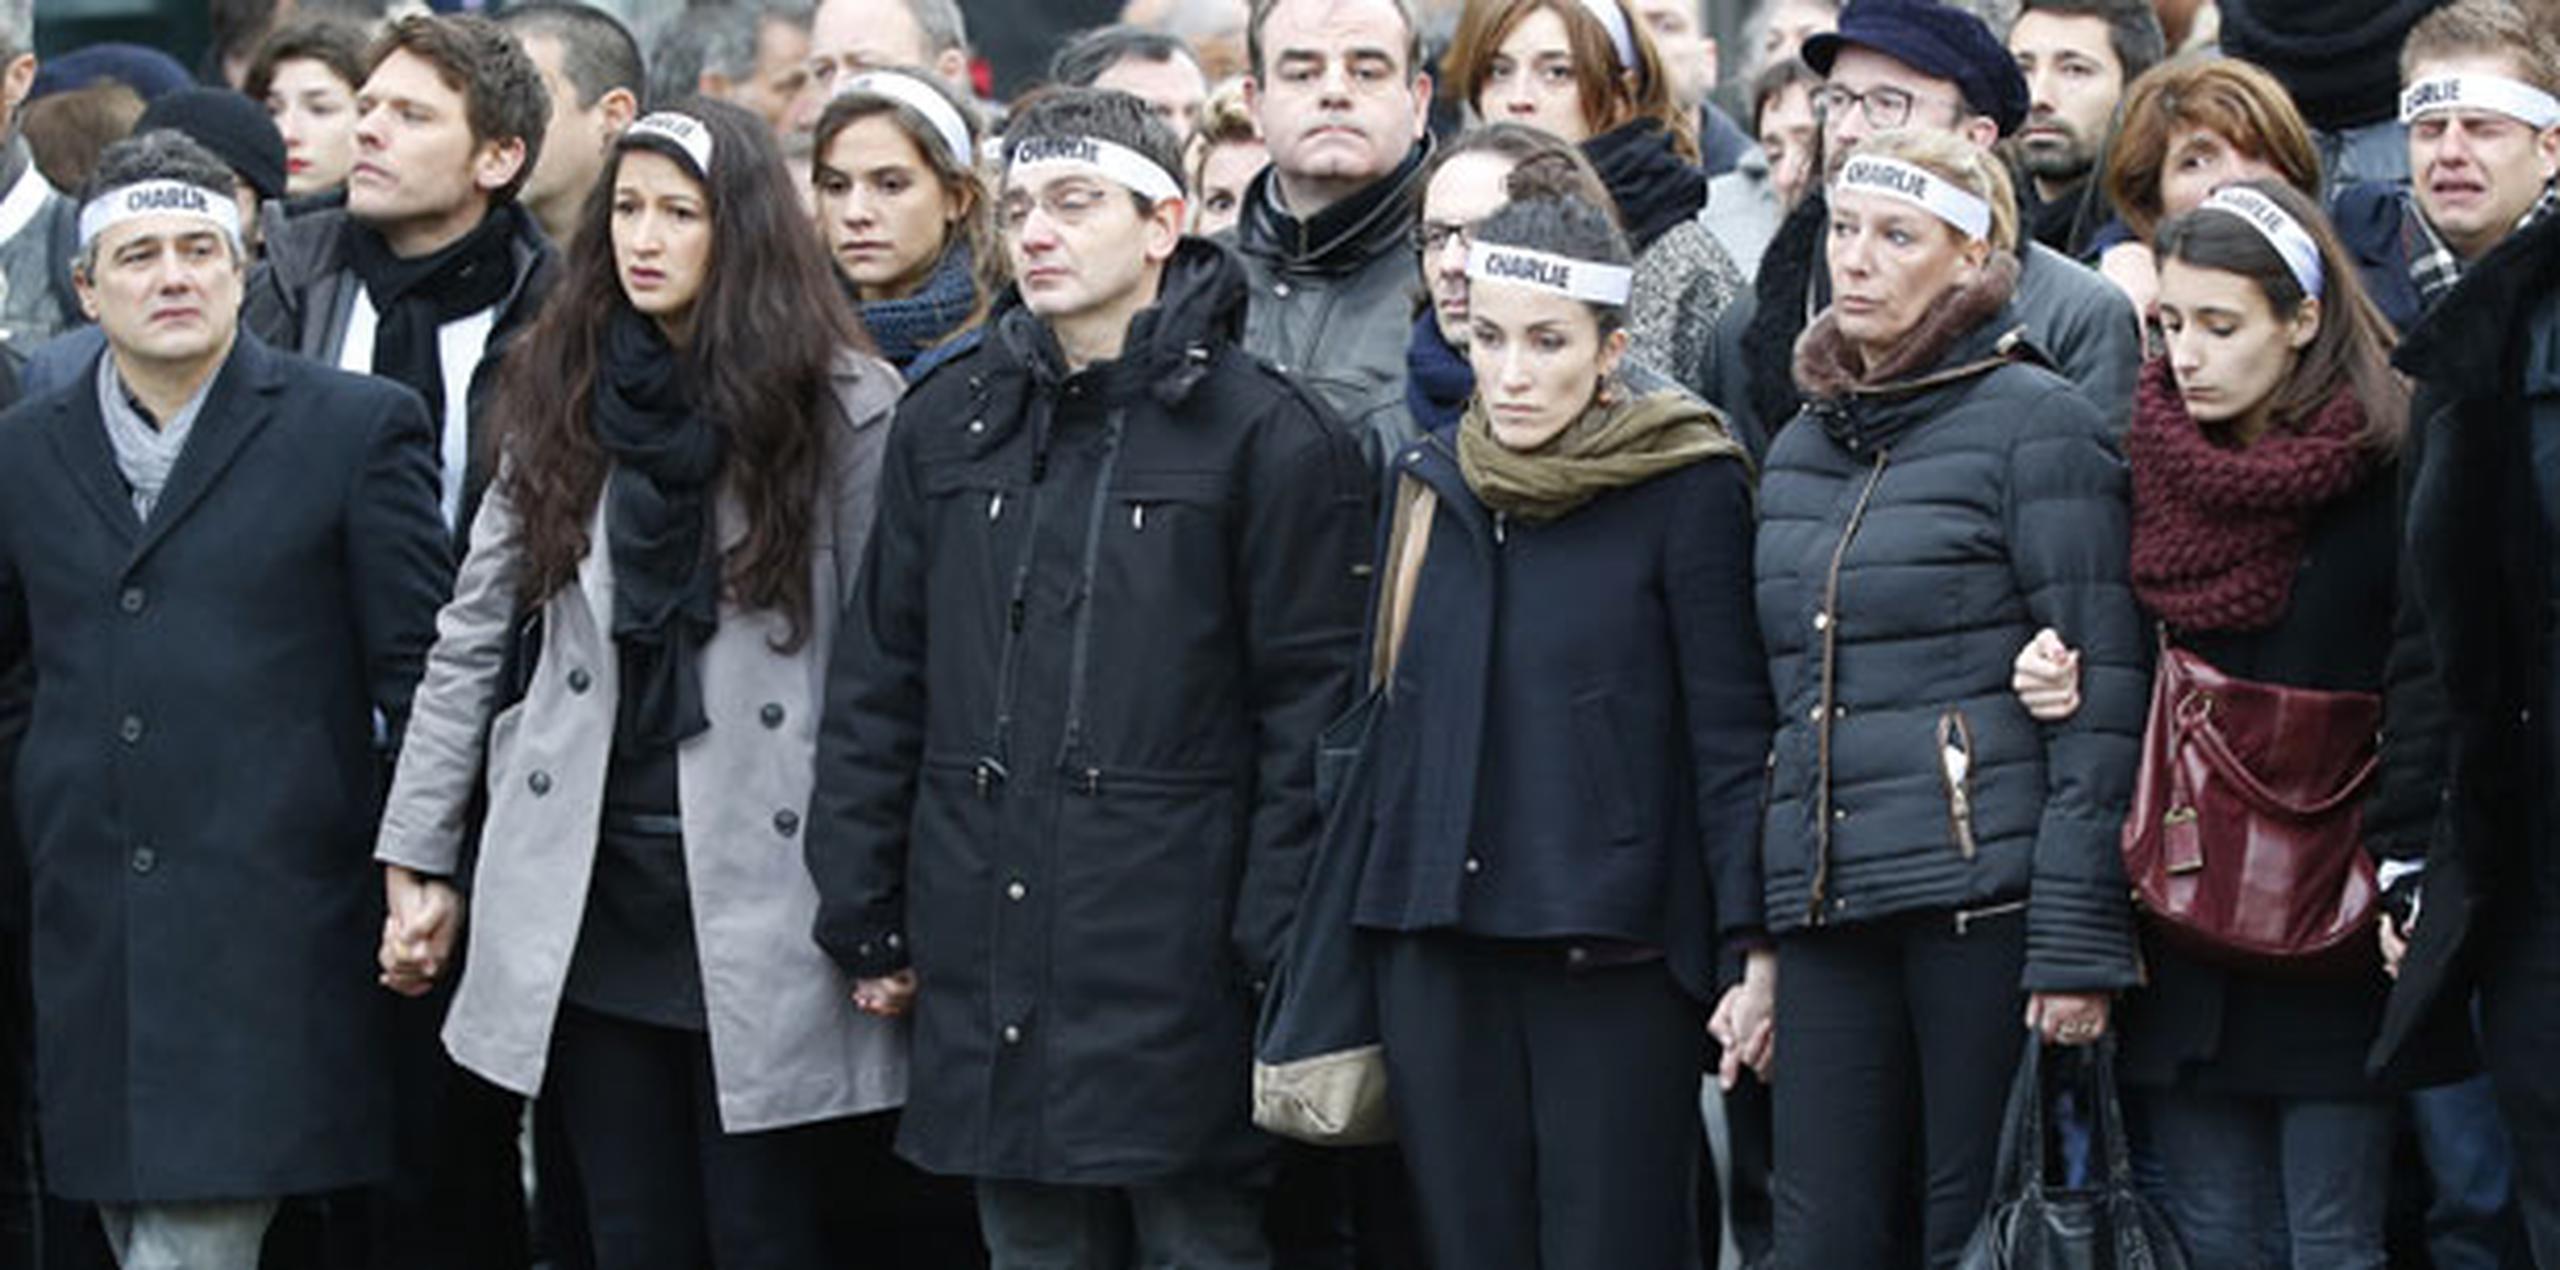 Miembros del staff del Charlie Hebdo durante la marcha que se llevó a cabo el pasado domingo en Francia. (Michel Euler/Prensa Asociada)